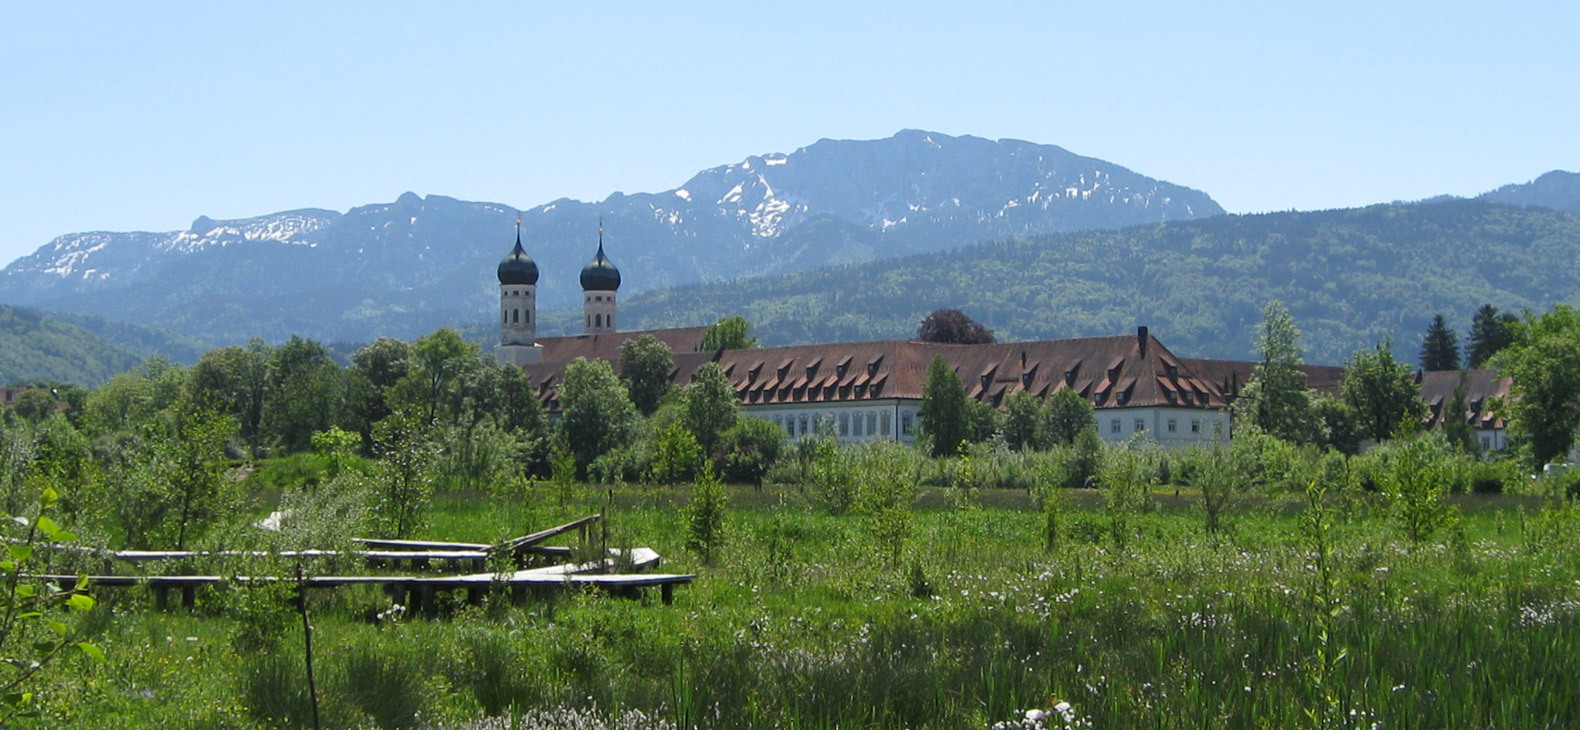 Das Erlebnisbiotop des Zentrums für Umwelt und Kultur Benediktbeuern mit seinem Sitz, dem Kloster Bendiktbeuern und den Bergen im Hintergrund.